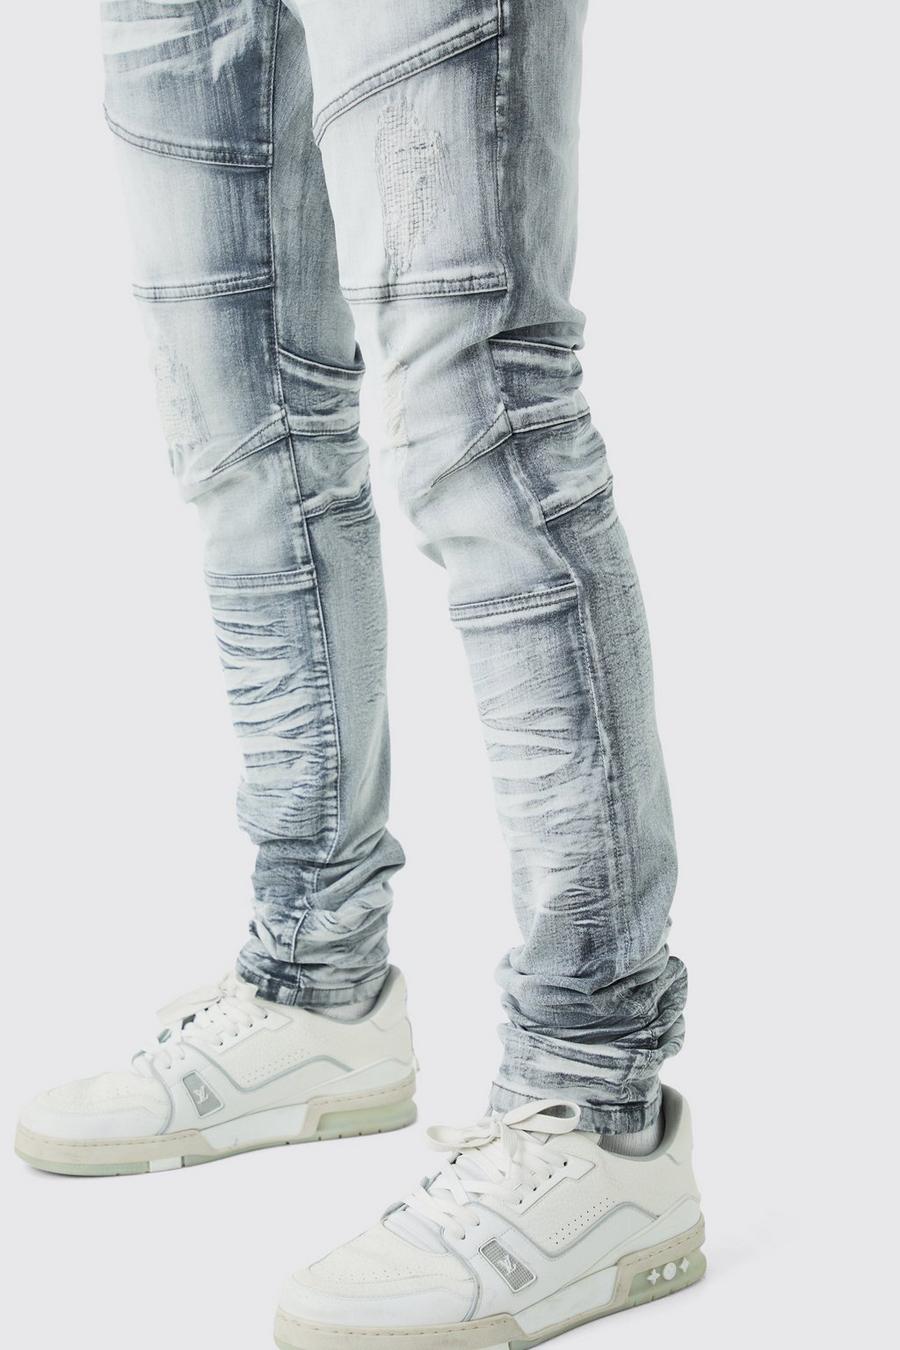 Jeans Tall Skinny Fit Stretch pesanti candeggiati con strappi, Ice grey